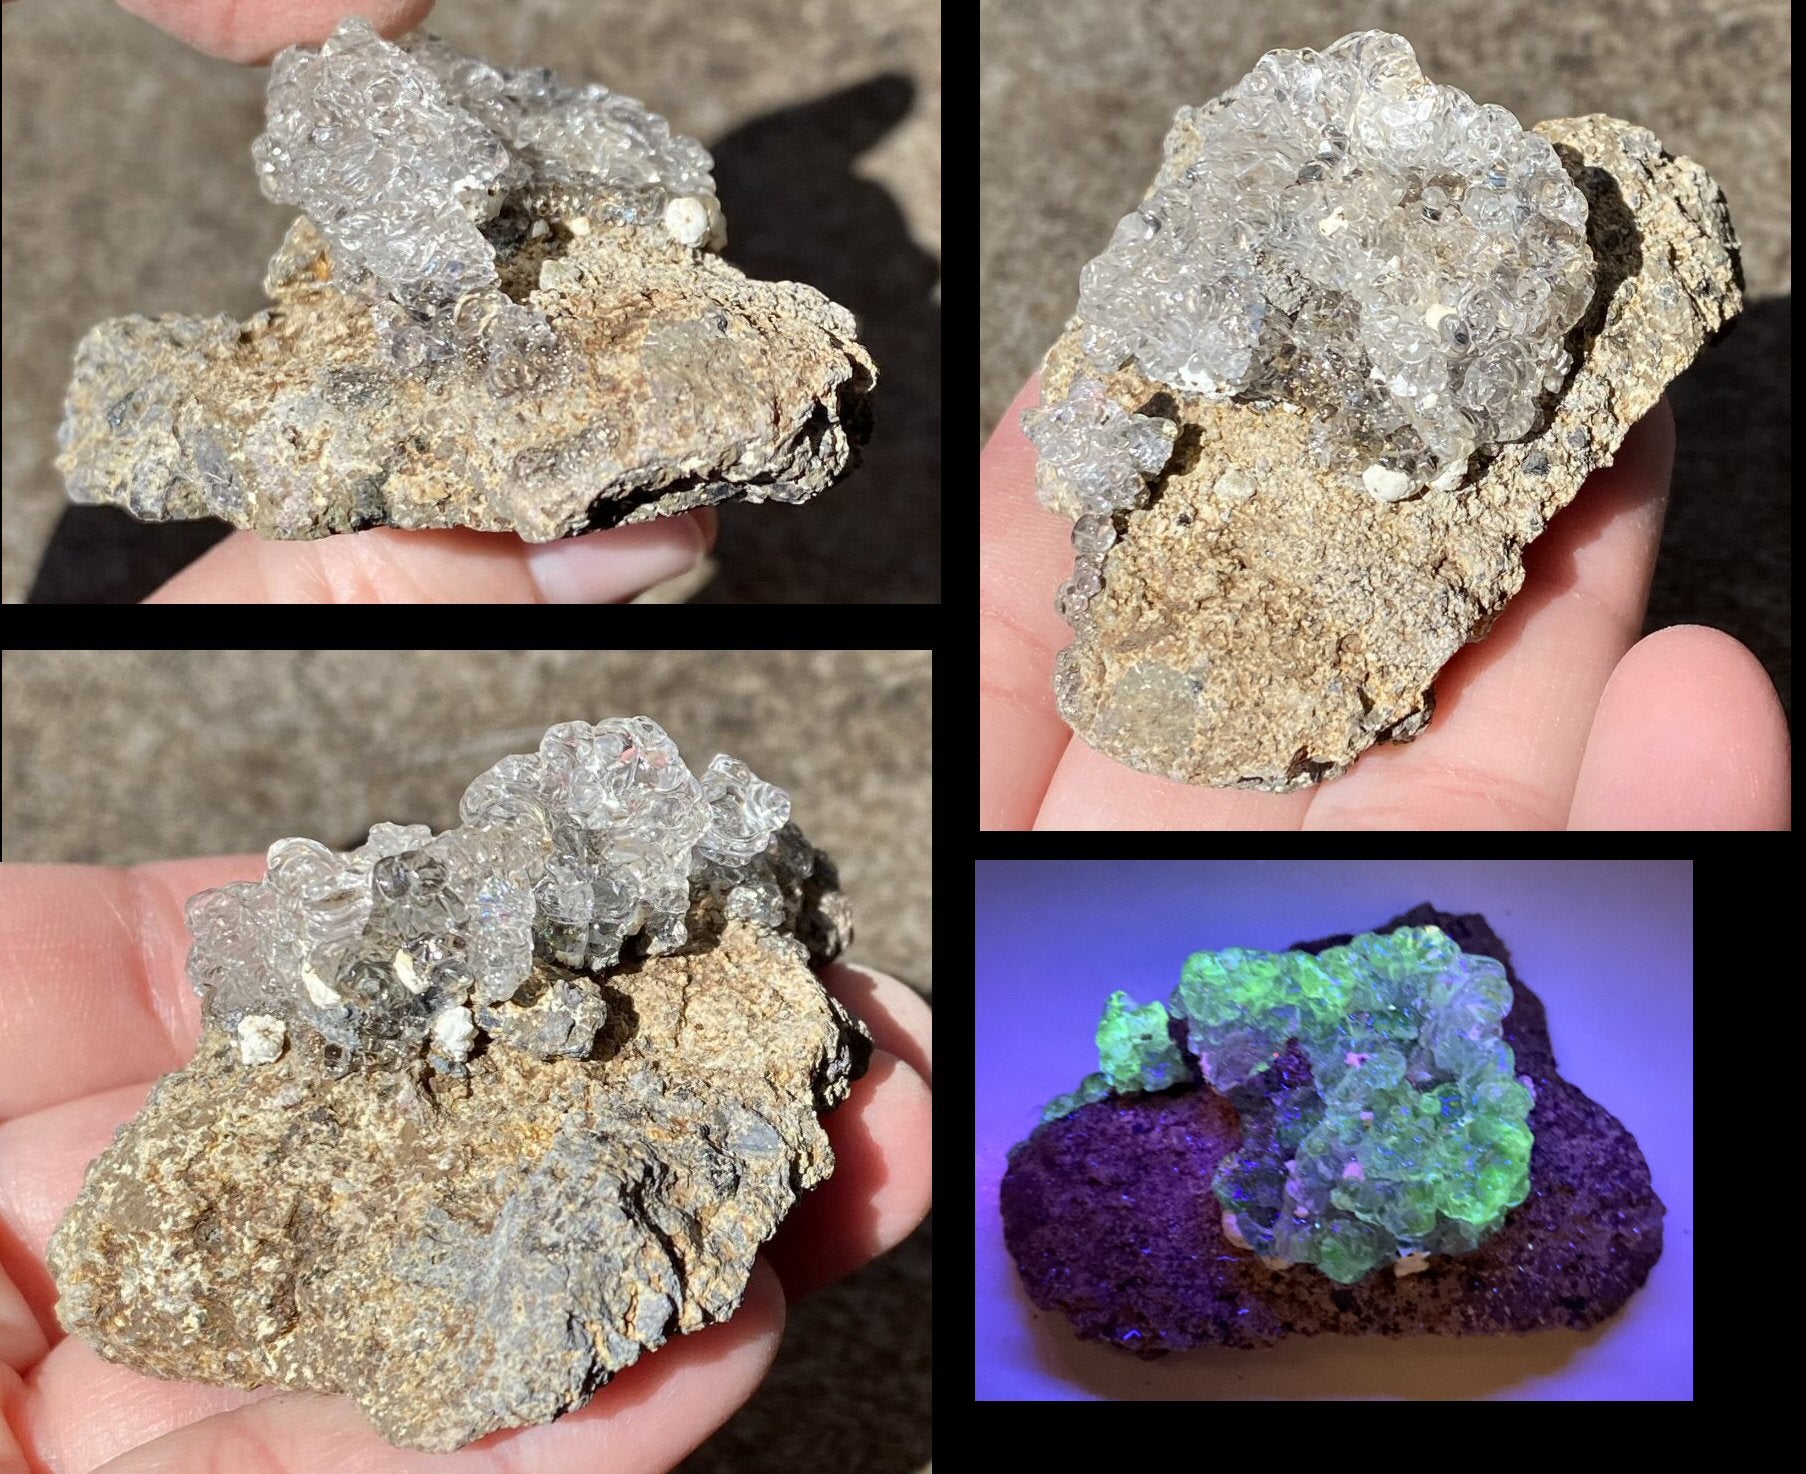 Fluorescent HYALITE OPAL Specimen from Czech Republic - AKA Water Opal